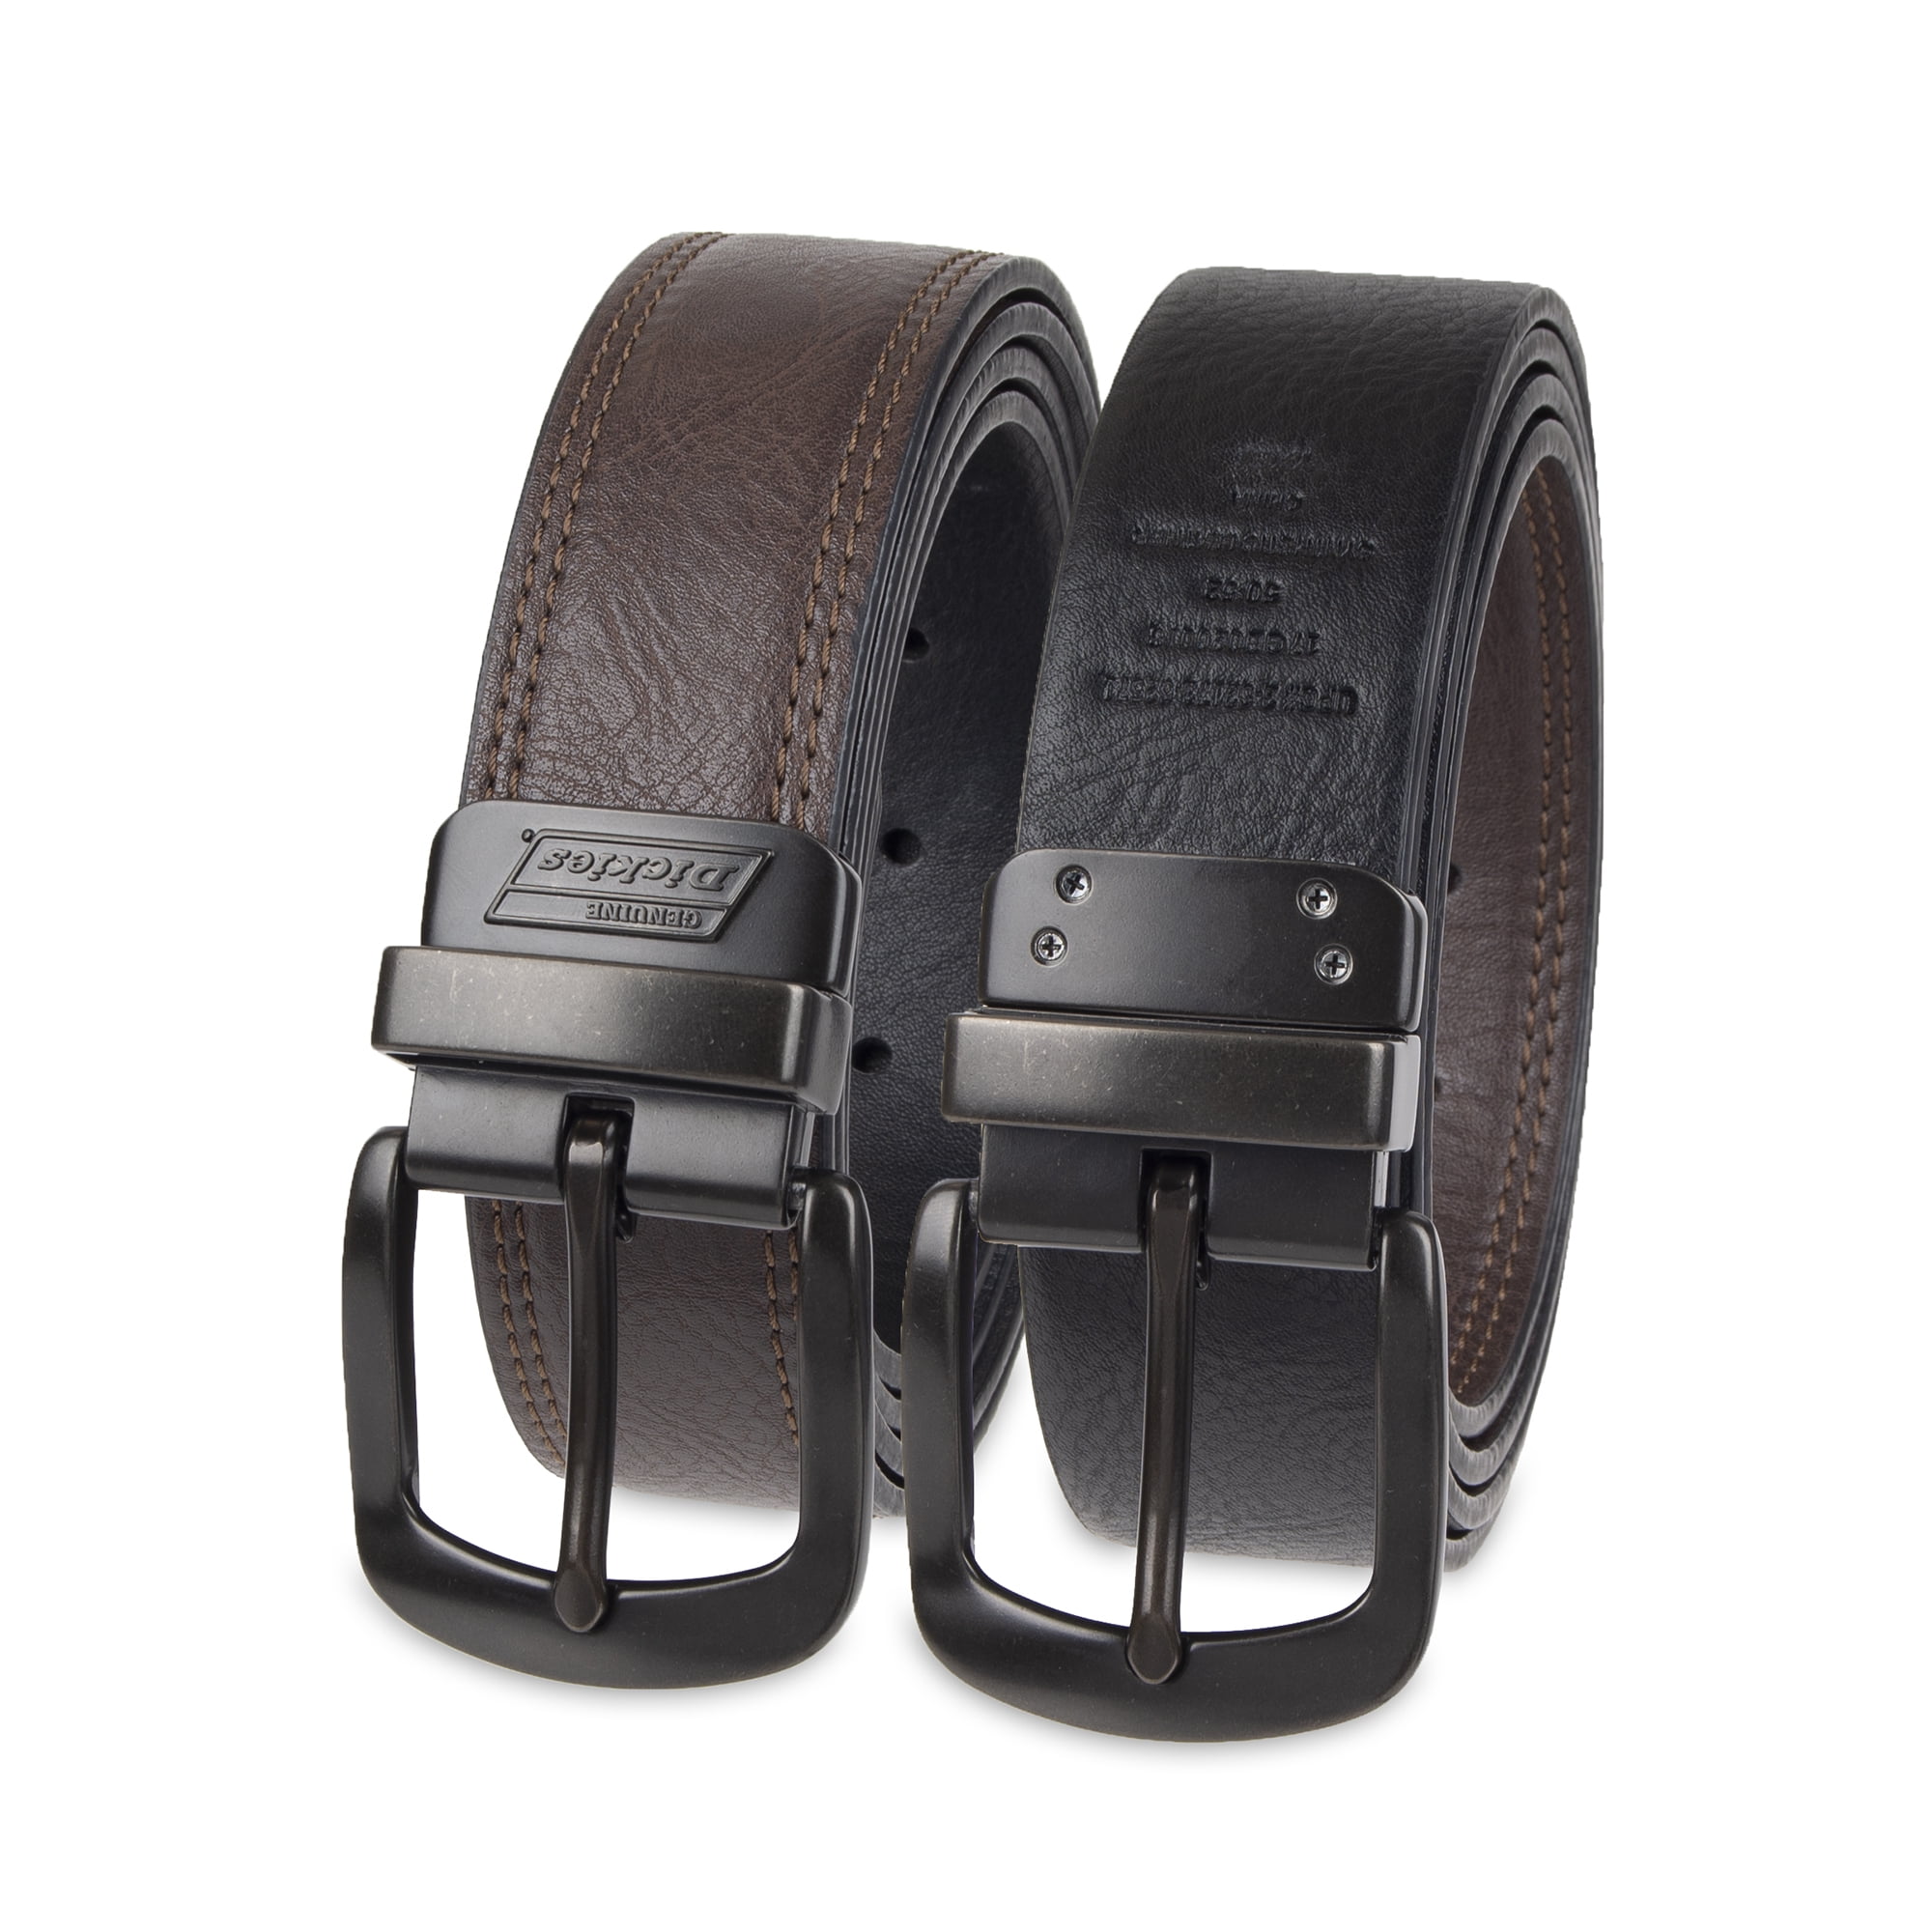 Martino Belt Leather Belt for Men Coffee and Black Utility Belt Simple Designer Belt Dress Belt Jeans Belt Bundle a Wallet